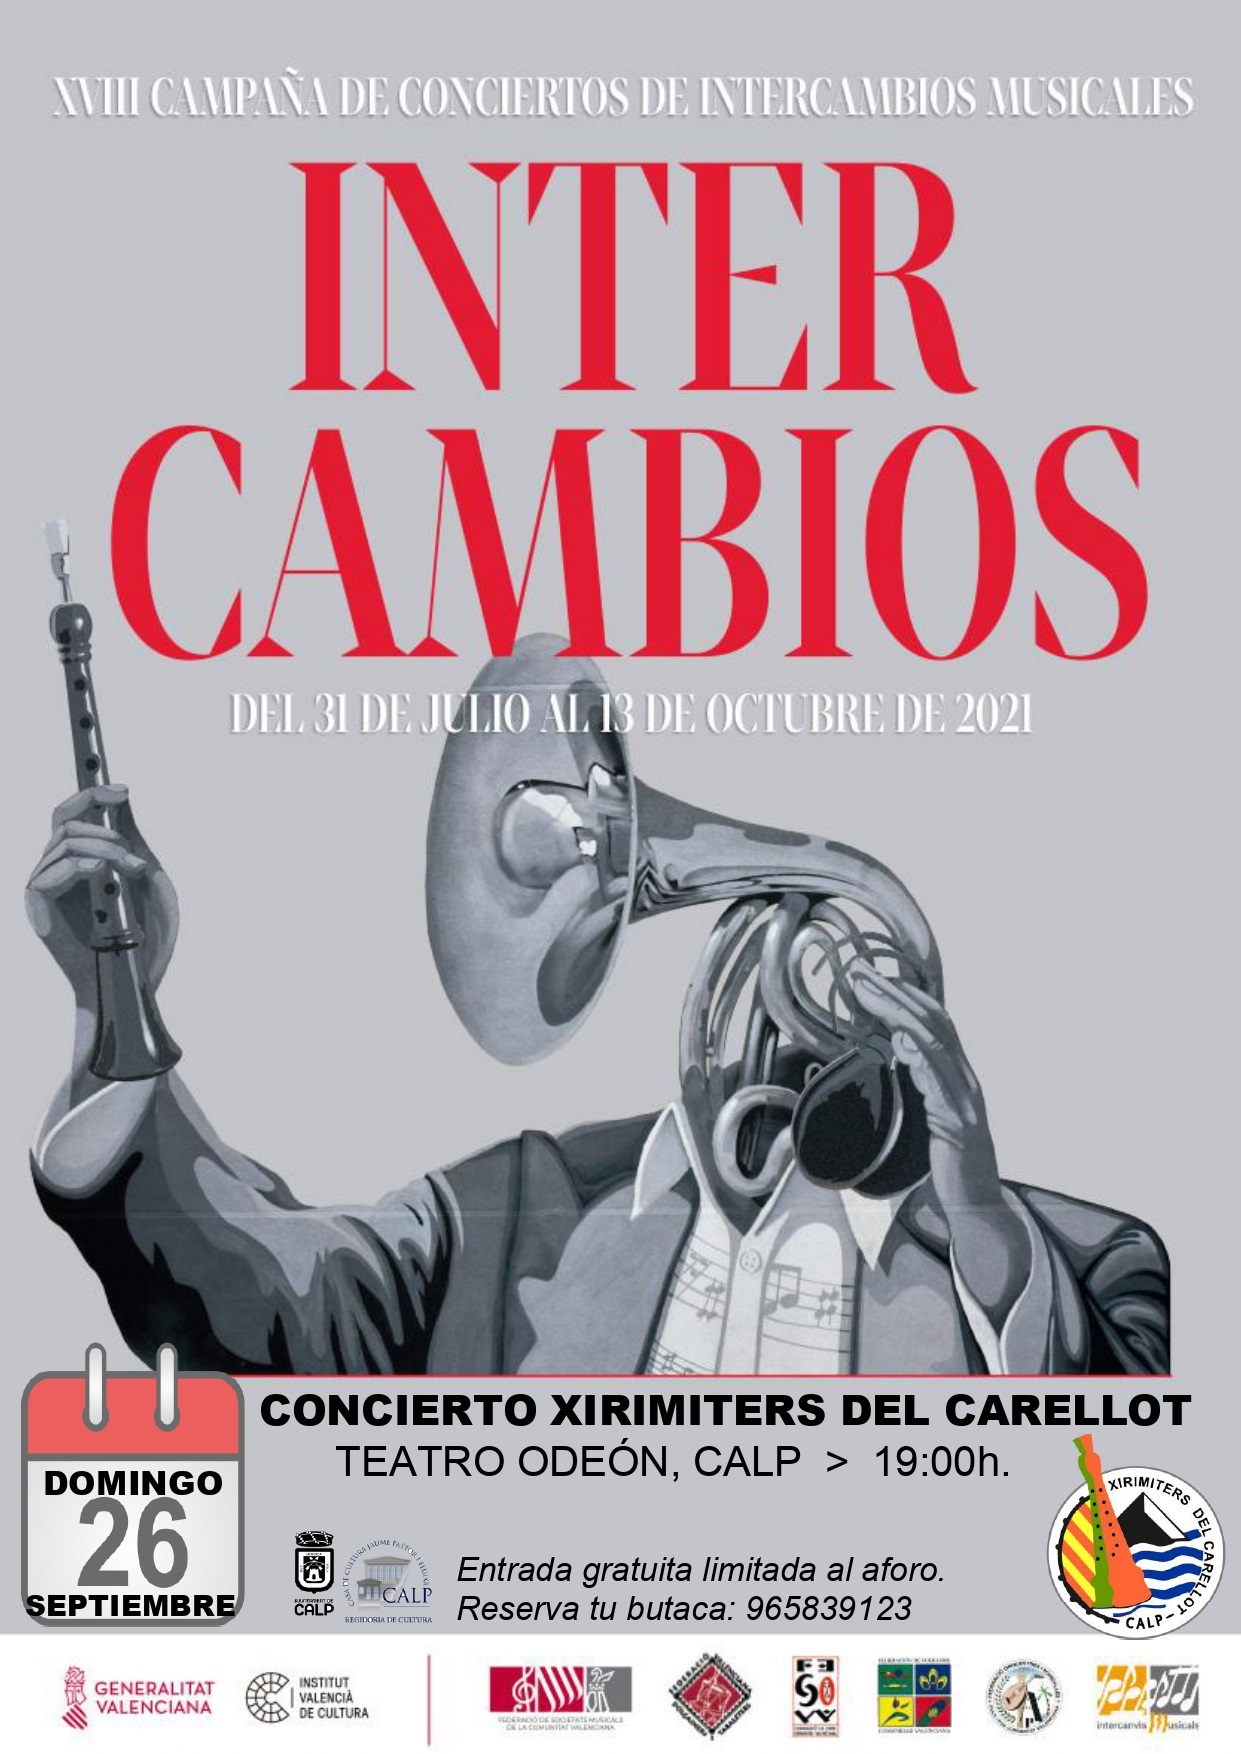 Teatro Odeón > 19: 00h.  XVIII CAMPAÑA DE CONCIERTOS DE INTERCAMBIO: XIRIMITERS DEL CARELLOT